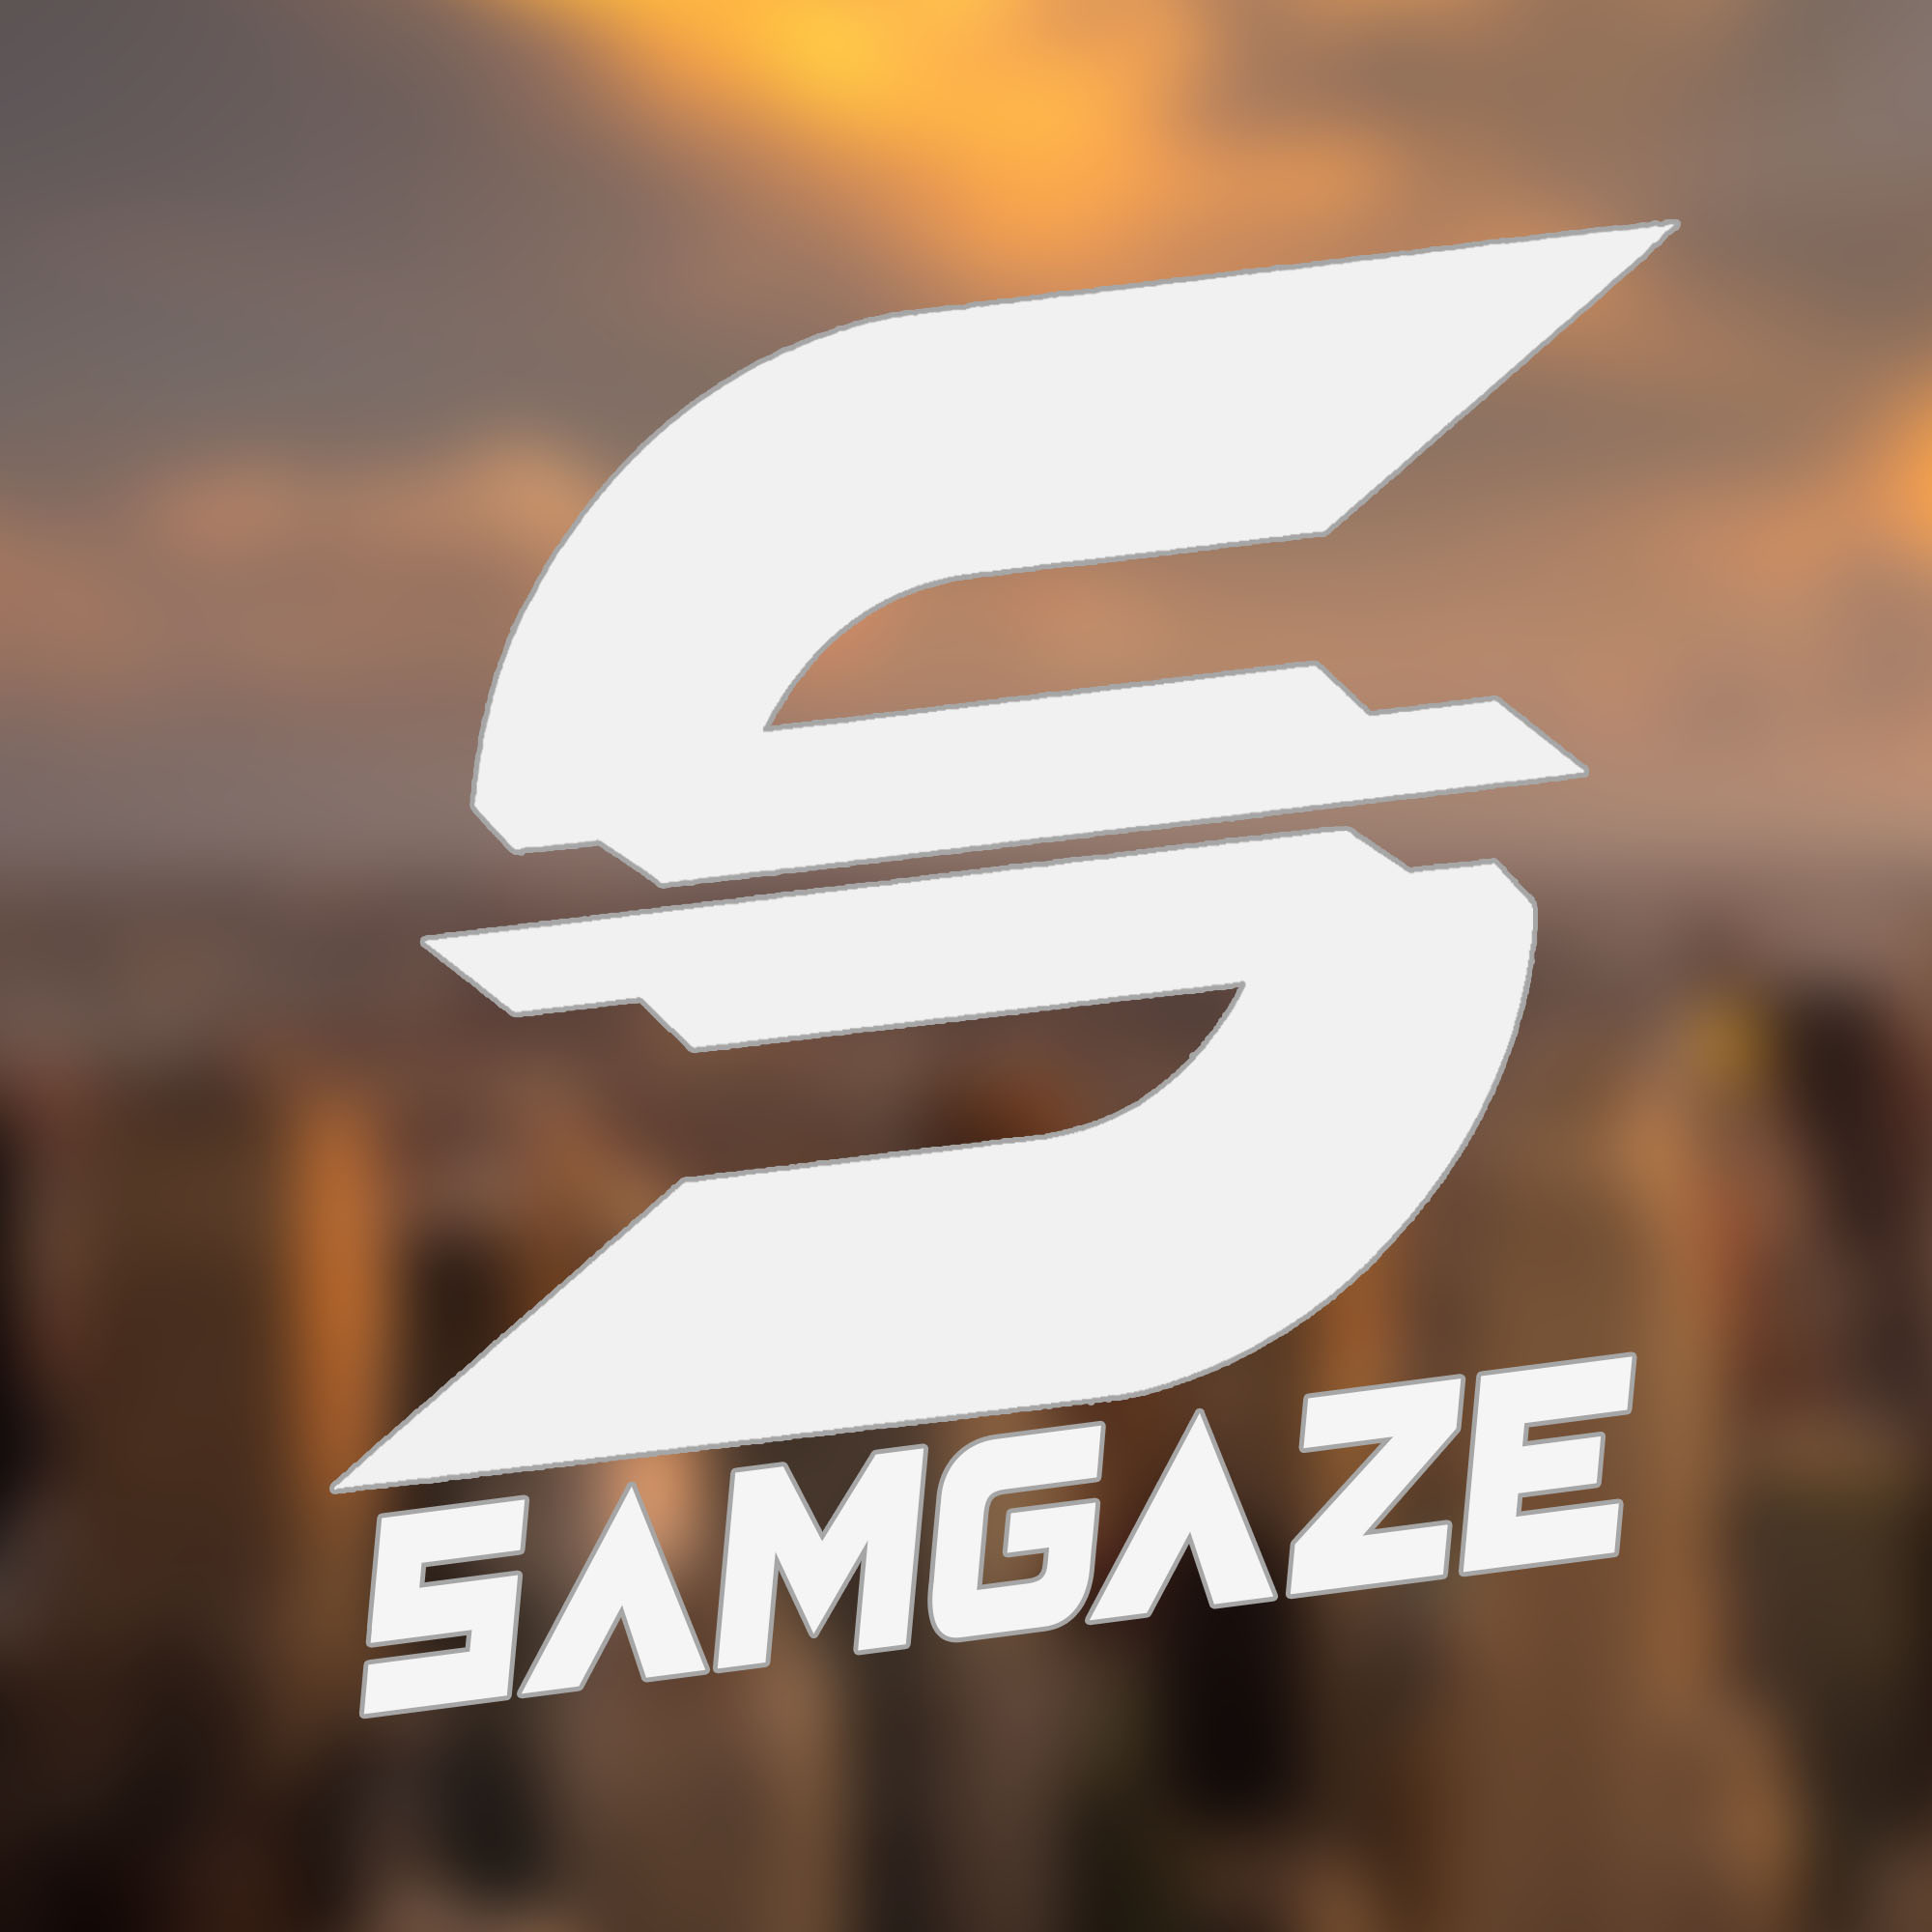 Samgaze Logo